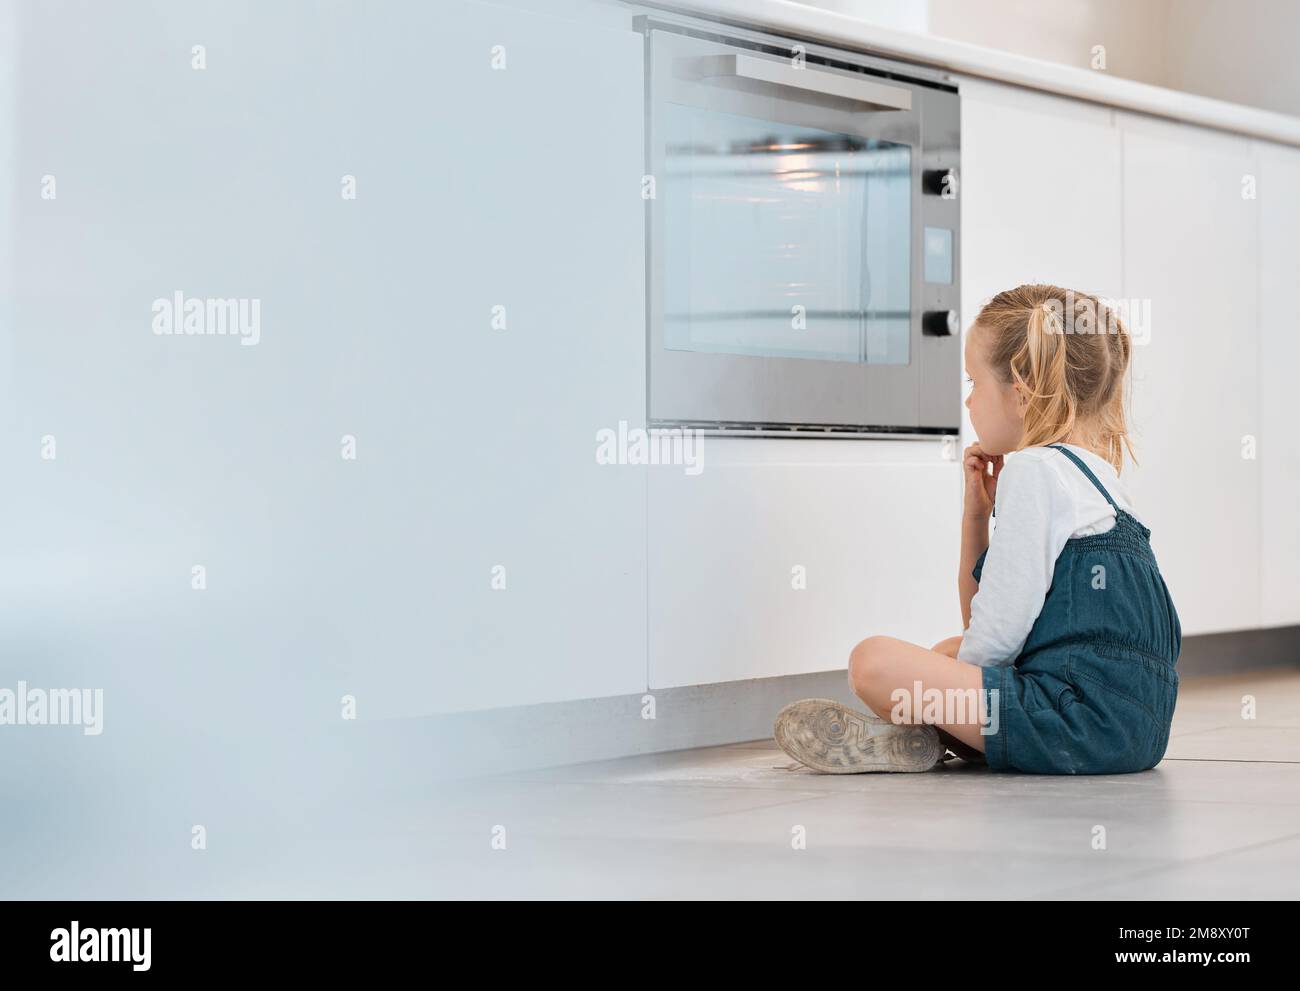 Ein kleines Mädchen, das geduldig am Ofen wartet. Ein weißes Kind, das auf die Ofentür schaut. Das kleine Kind wartet auf seine Backwaren. Blond Stockfoto